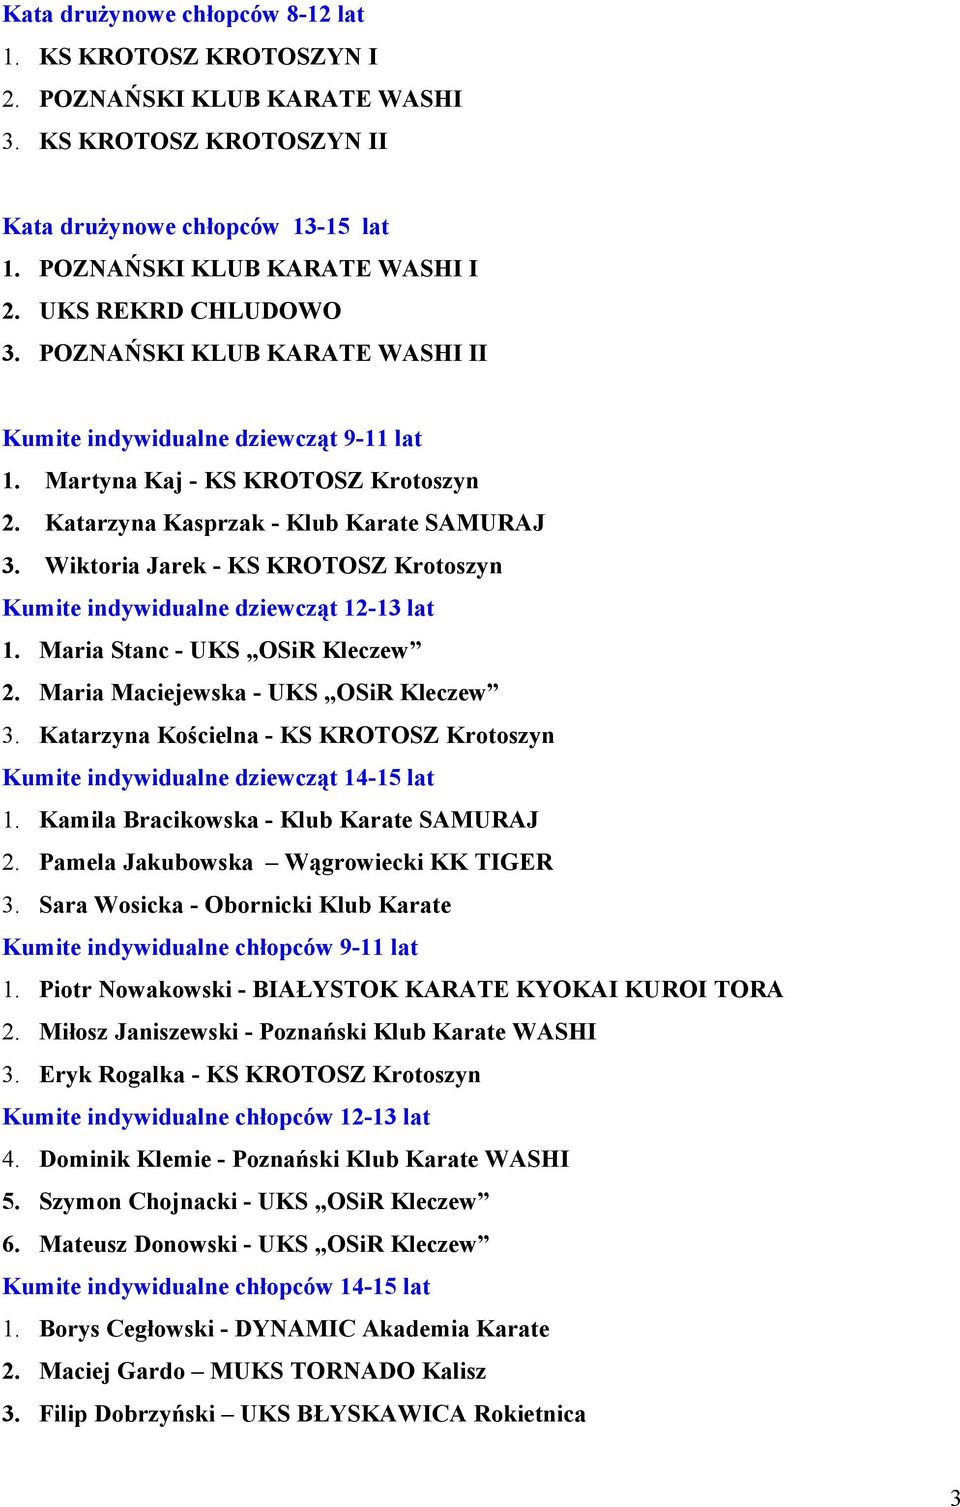 Wiktoria Jarek - KS KROTOSZ Krotoszyn Kumite indywidualne dziewcząt 12-13 lat 1. Maria Stanc - UKS OSiR Kleczew 2. Maria Maciejewska - UKS OSiR Kleczew 3.